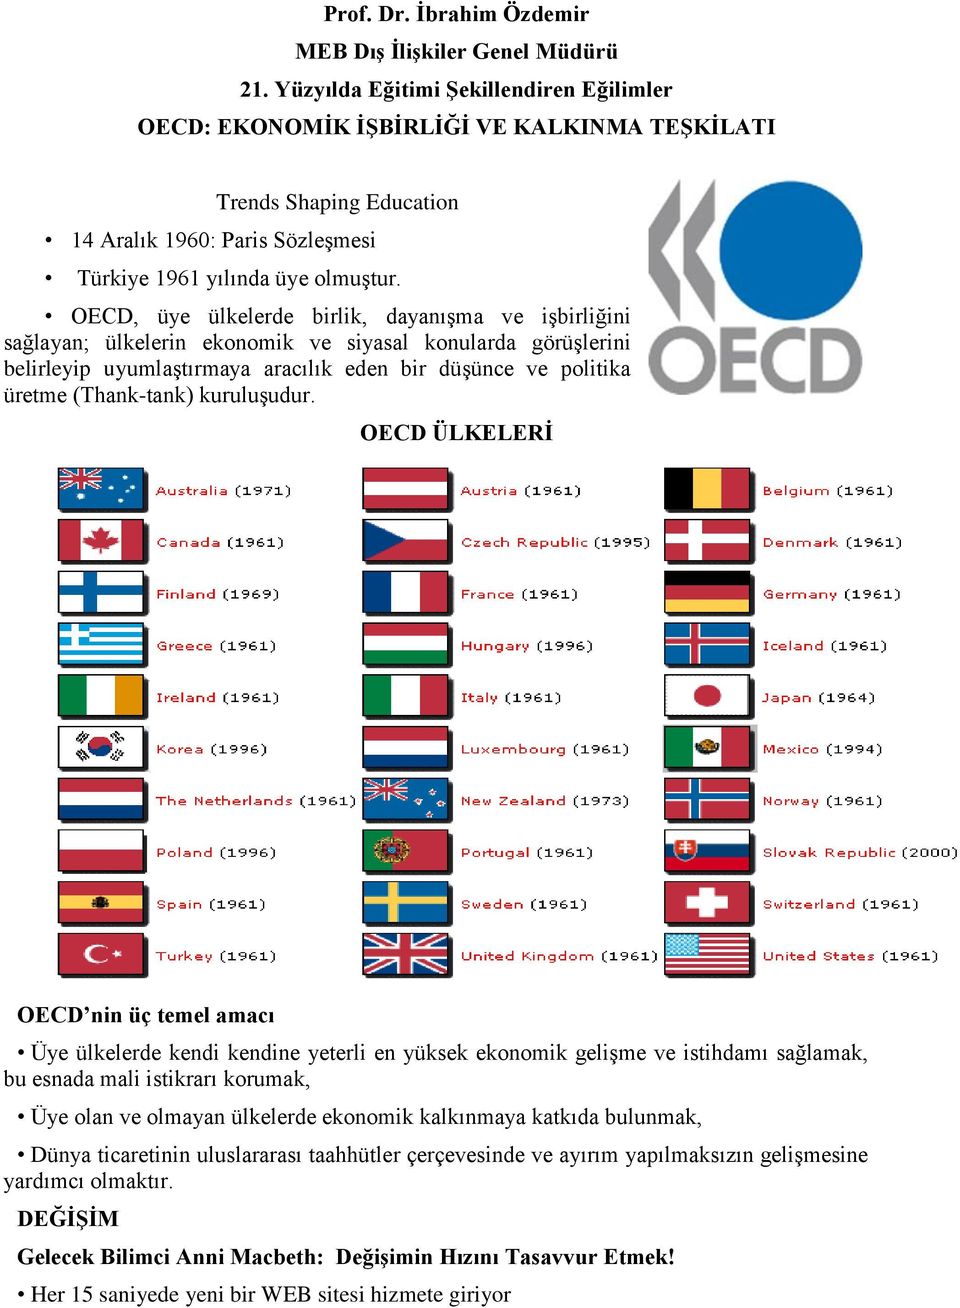 OECD, üye ülkelerde birlik, dayanıģma ve iģbirliğini sağlayan; ülkelerin ekonomik ve siyasal konularda görüģlerini belirleyip uyumlaģtırmaya aracılık eden bir düģünce ve politika üretme (Thank-tank)